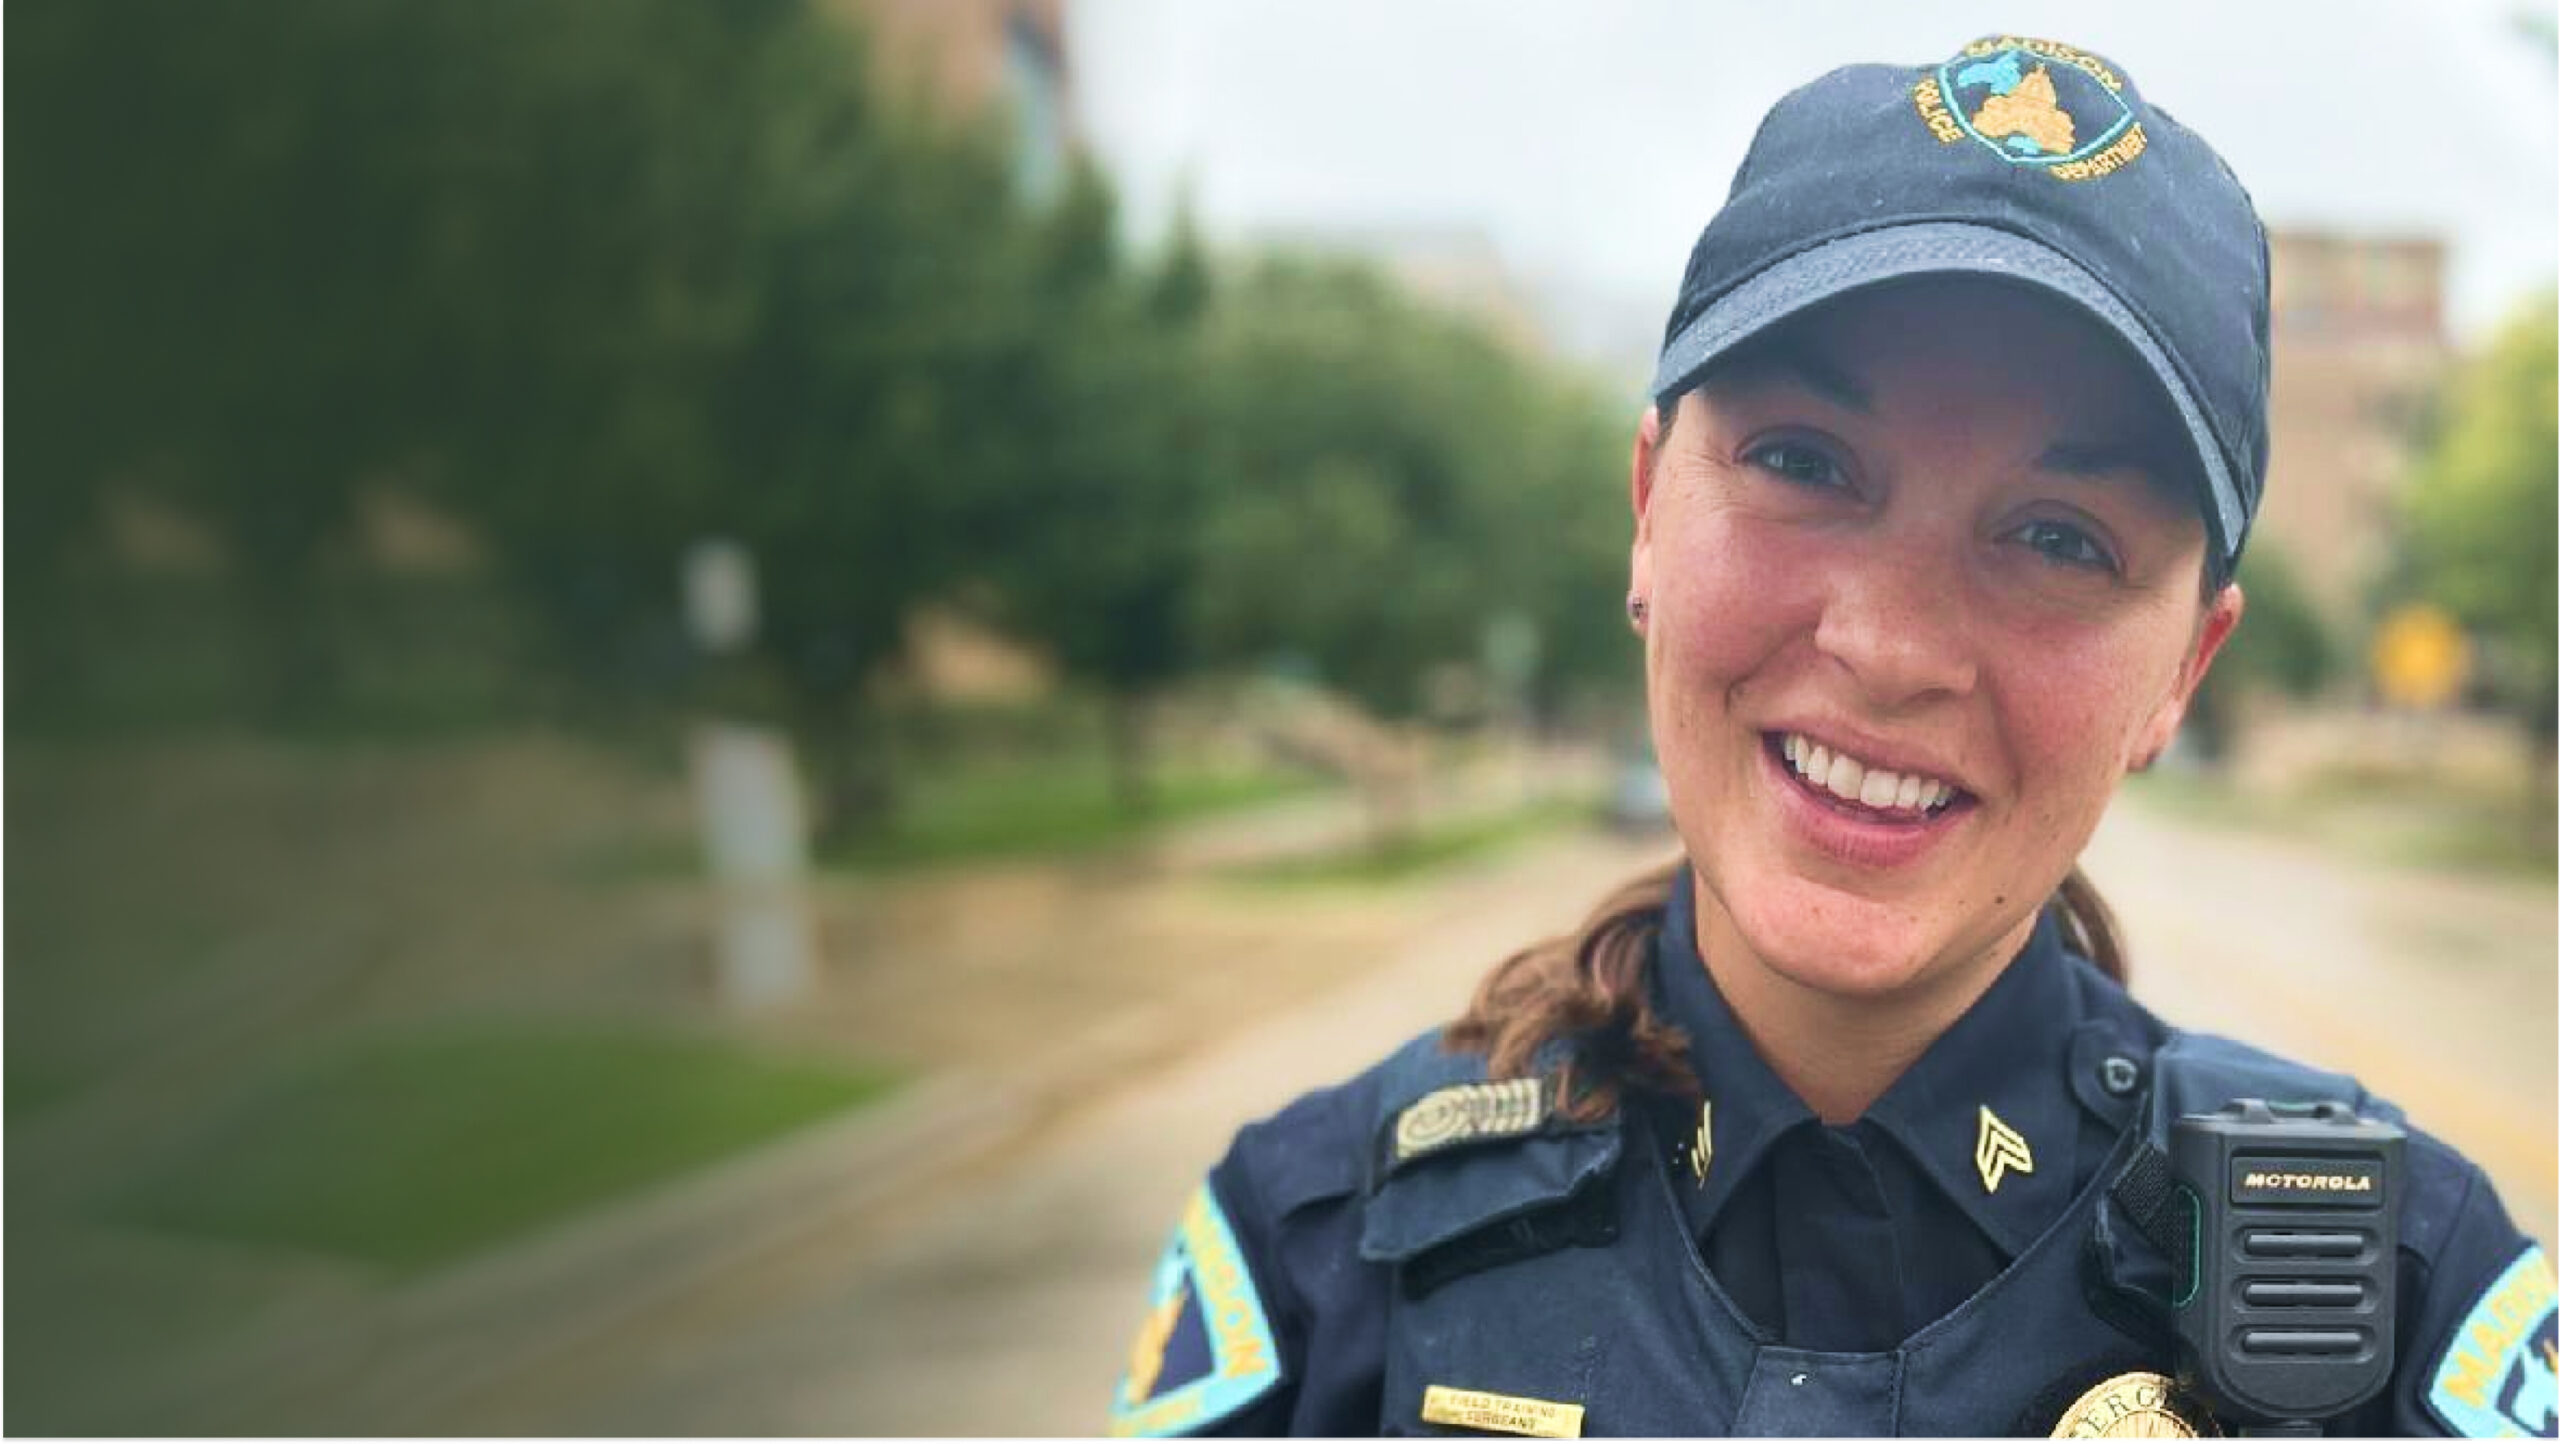 Female officer smiling